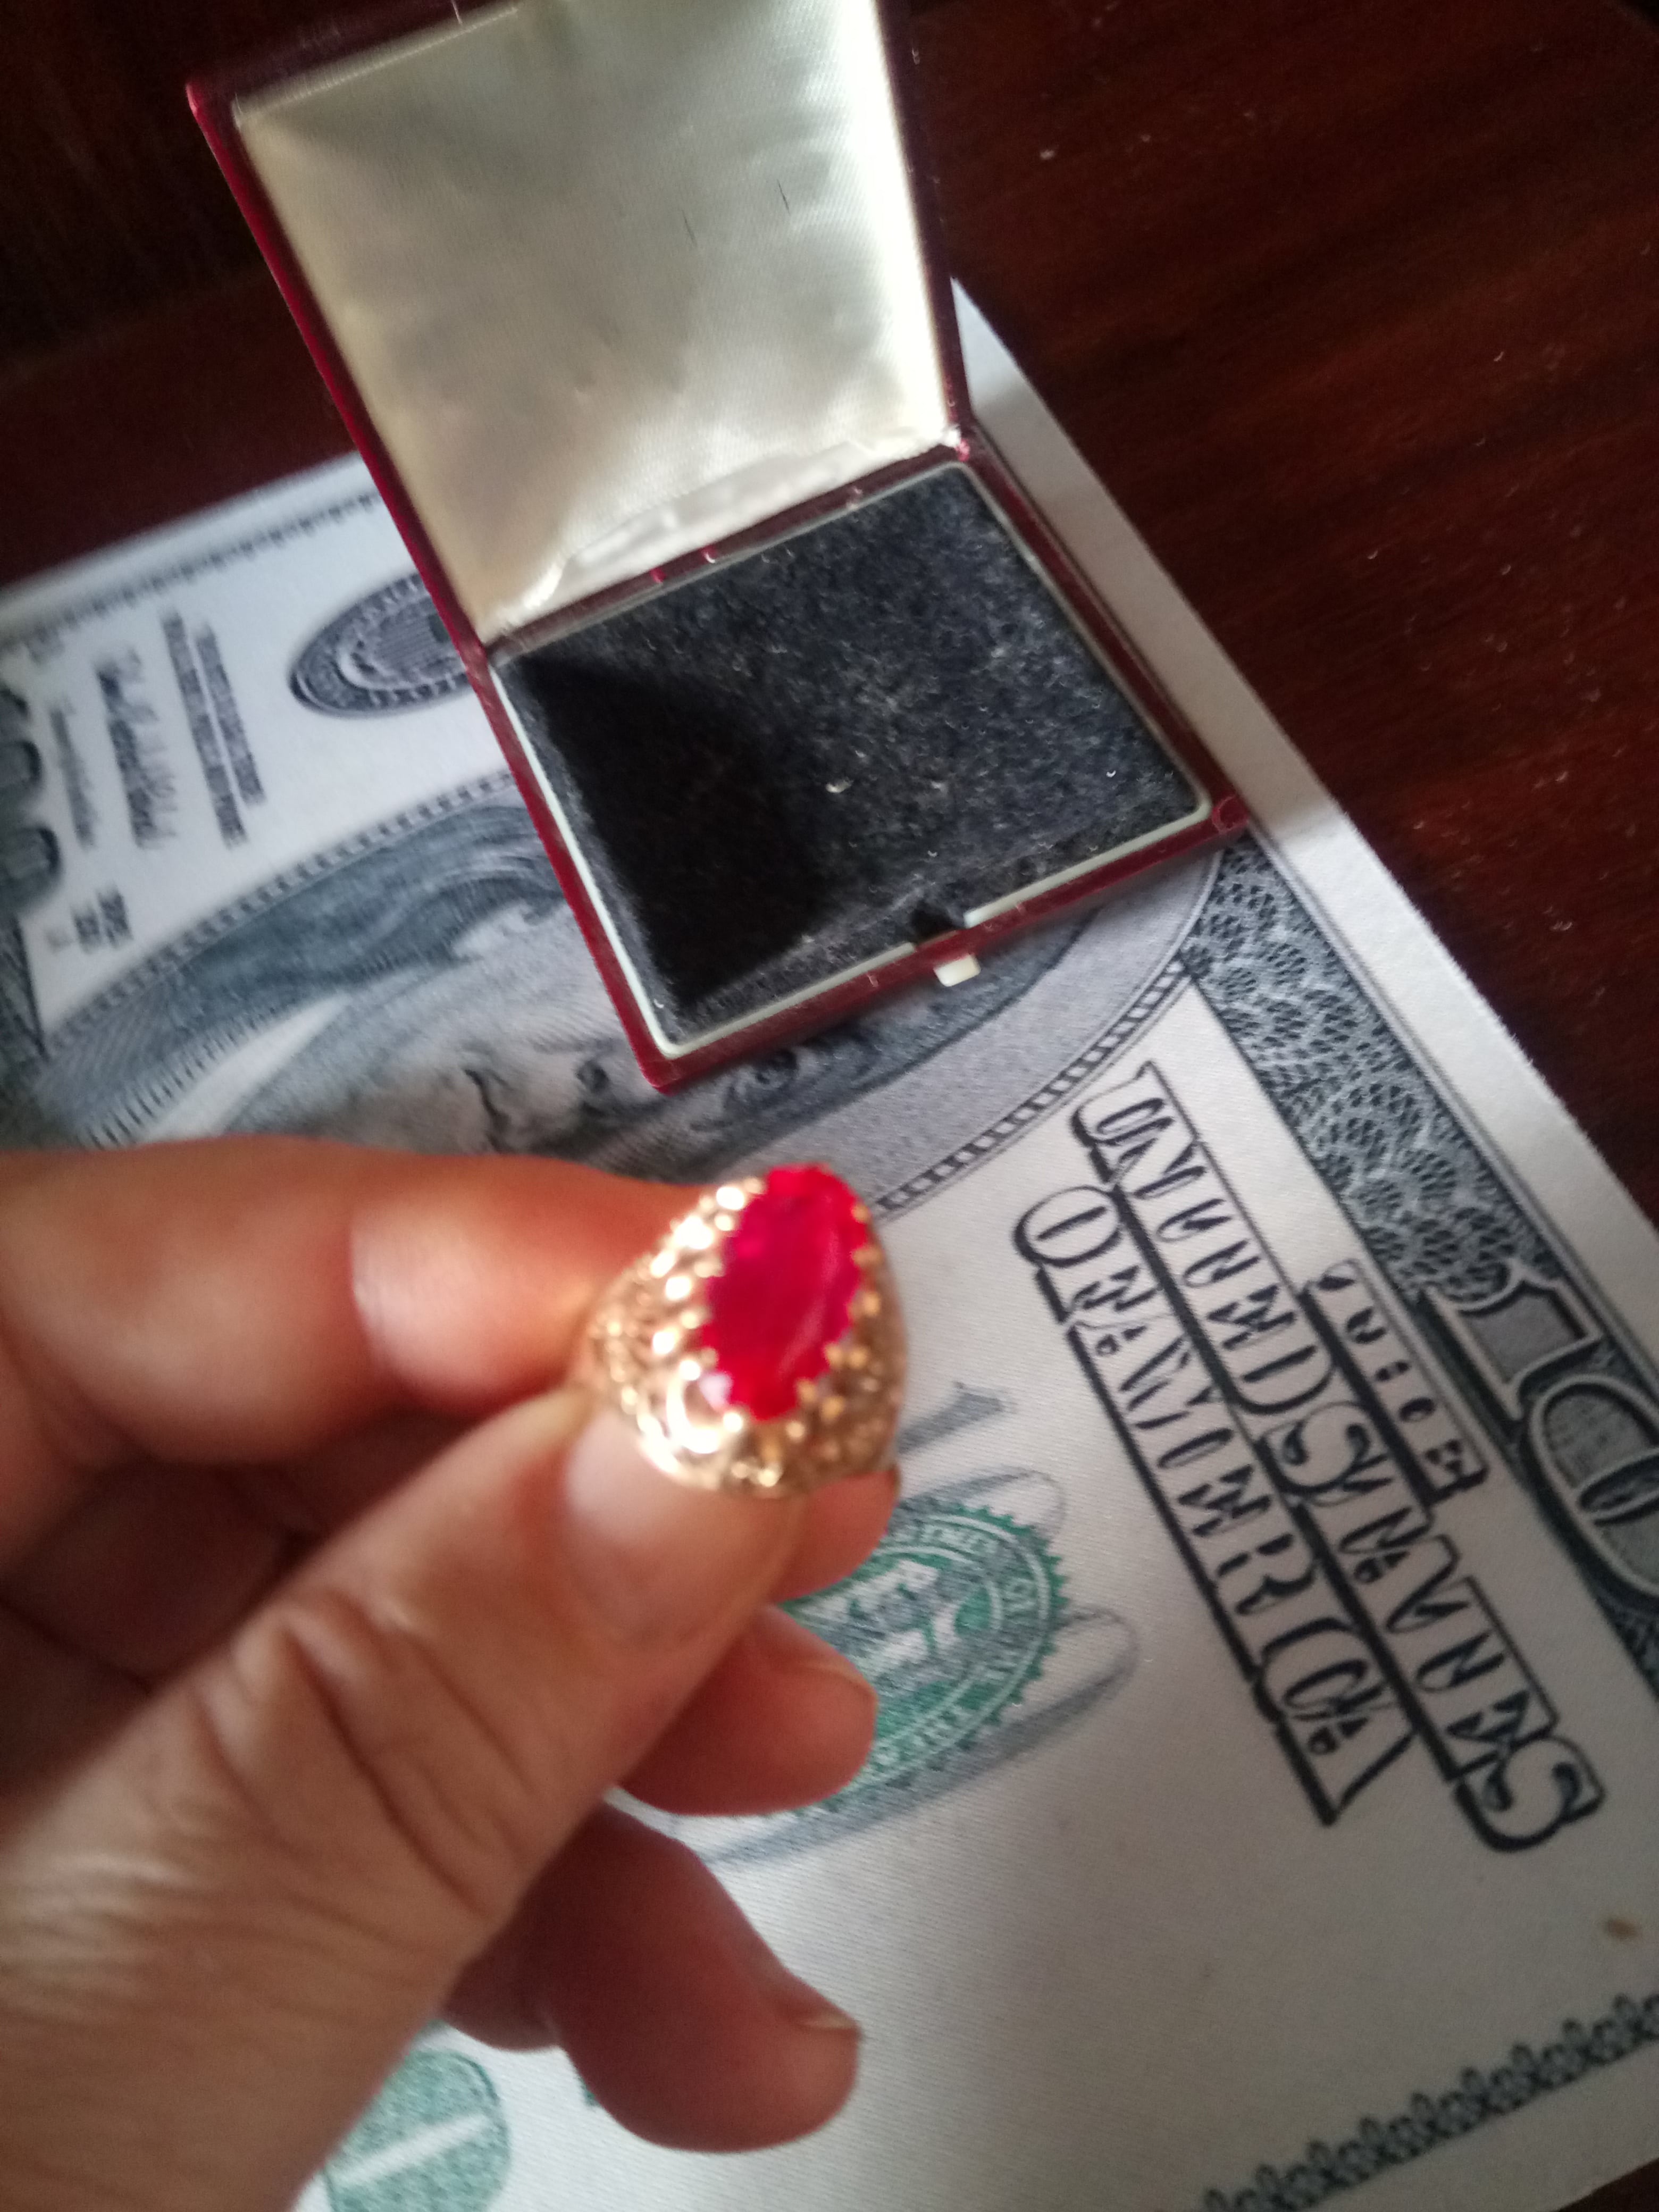 Кольцо золотое с рубином времён СССР. - фотография